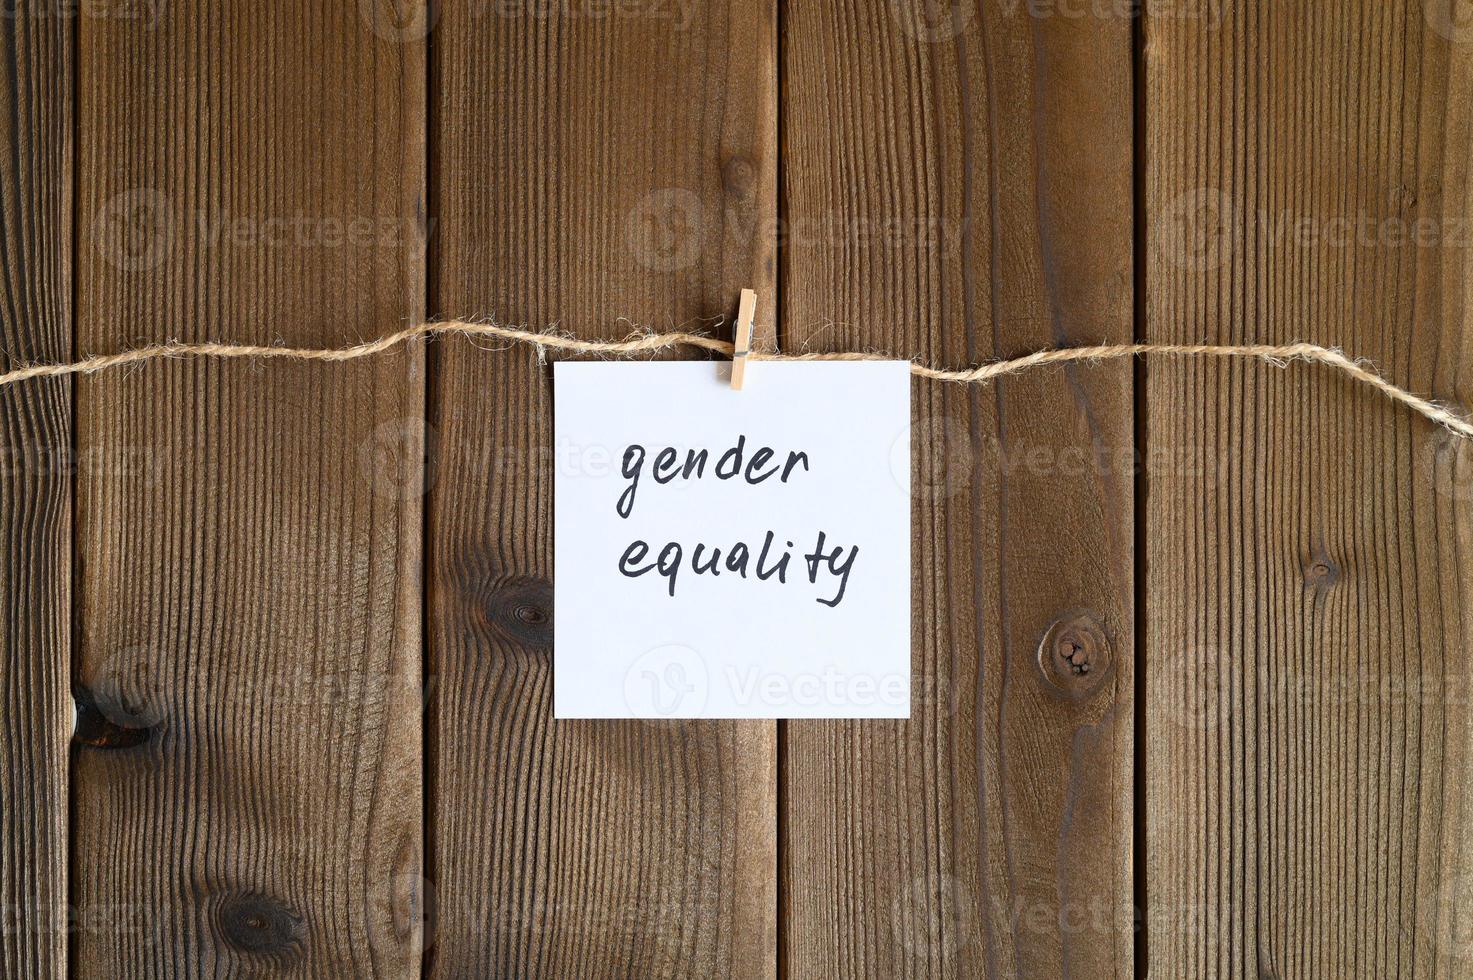 uguaglianza di genere donne foto